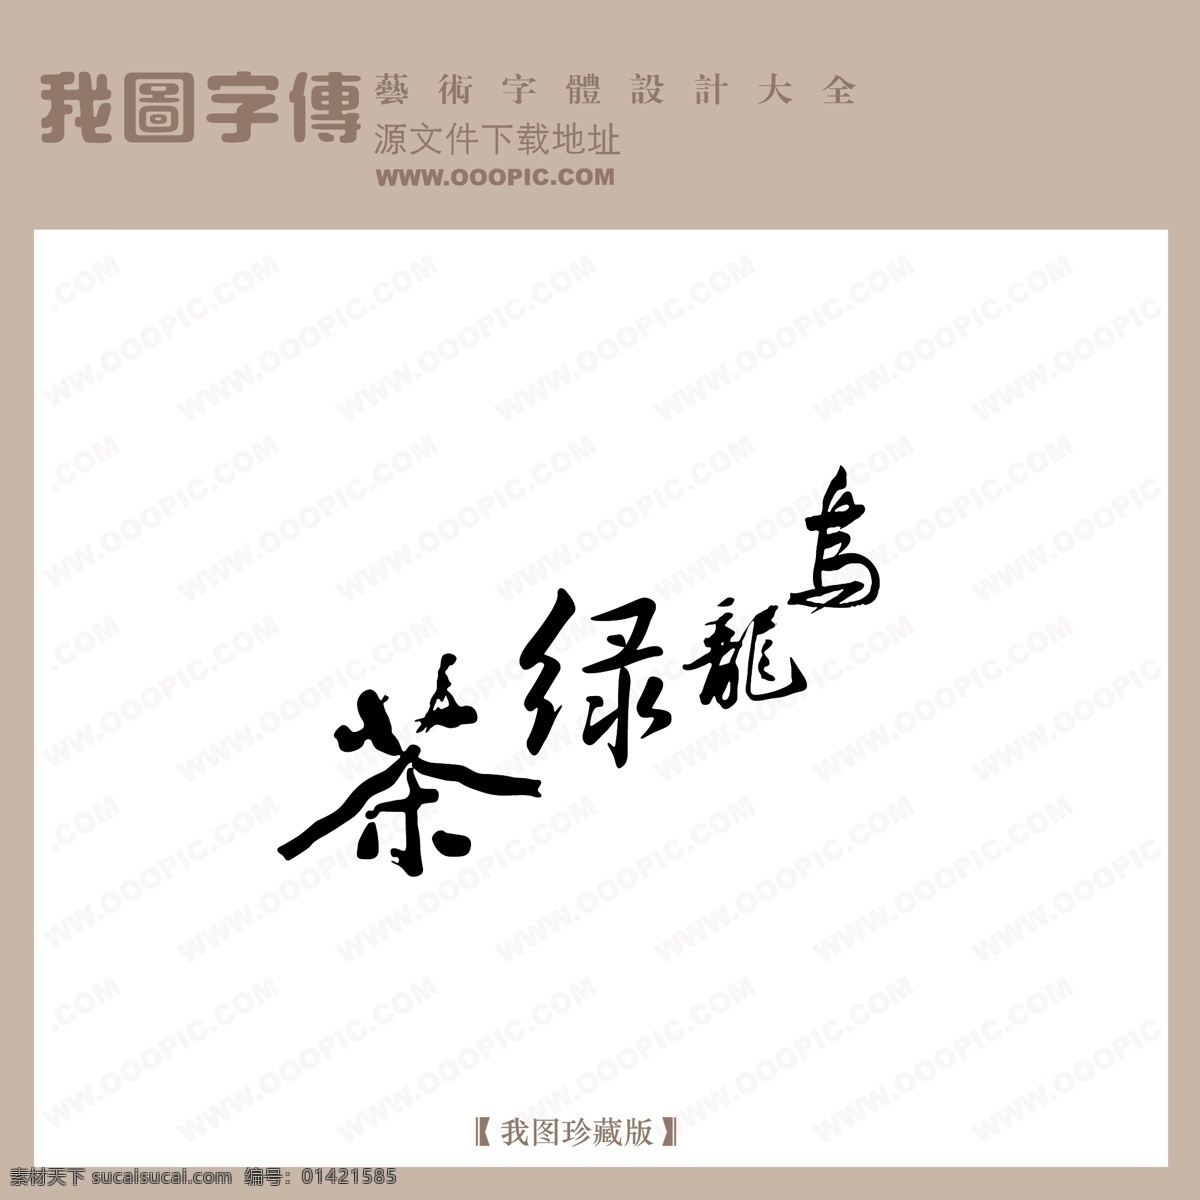 乌龙 绿茶 中文 古典 书法 中国 字体 创意 美工 字 艺术 中国字体设计 中文古典书法 乌龙绿茶 矢量图